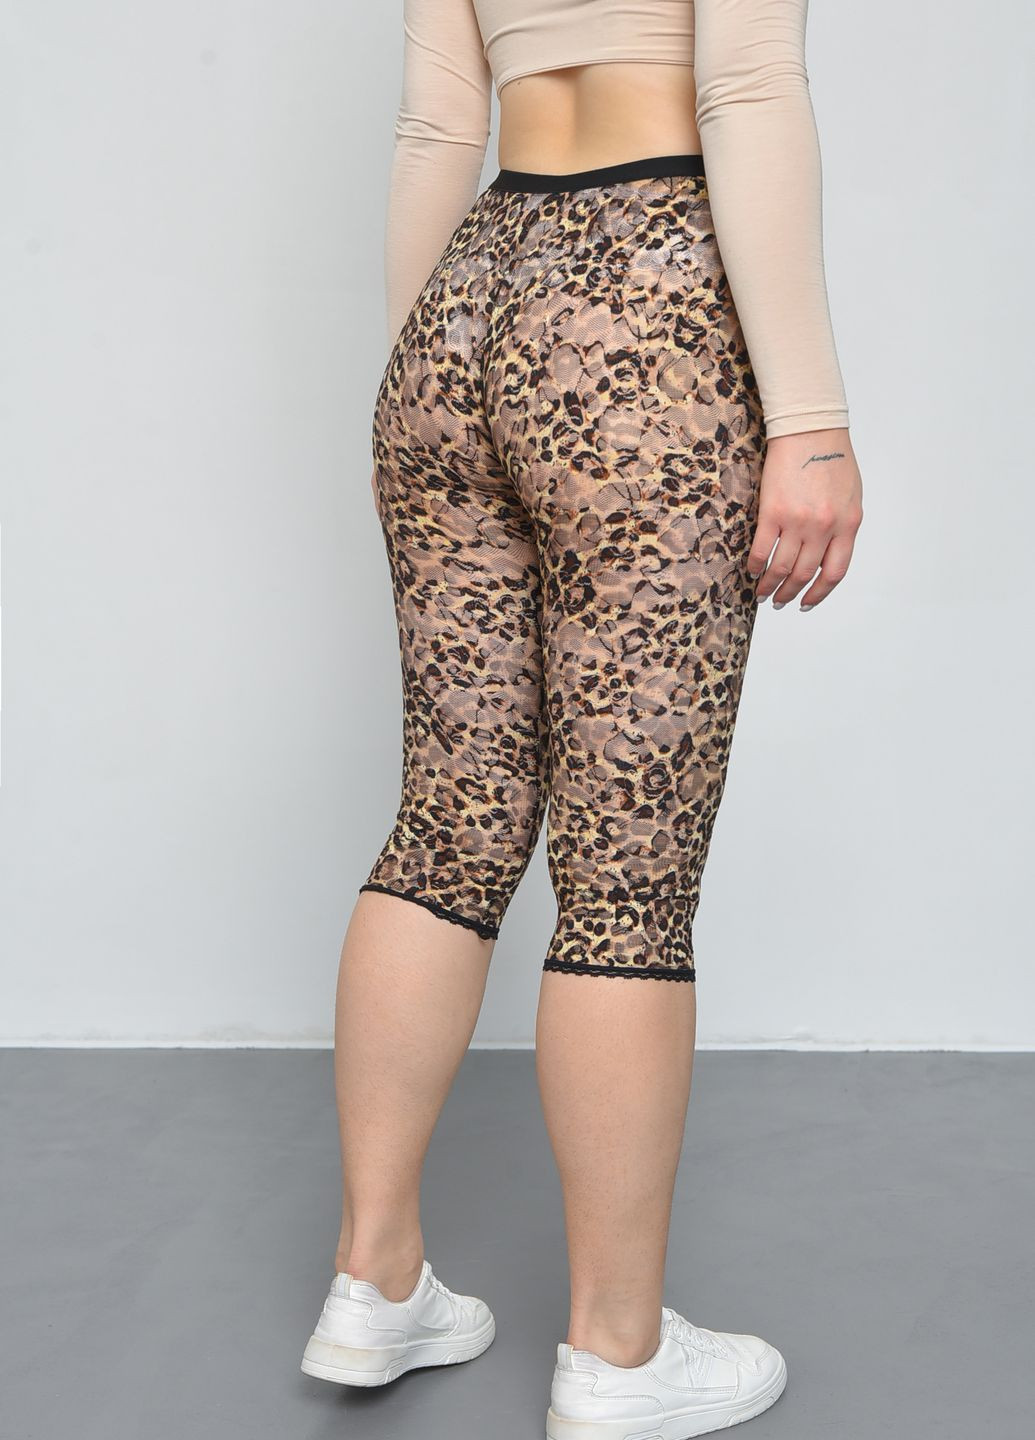 Бриджи женские гипюровые леопардового цвета размер 44 Let's Shop (268738441)